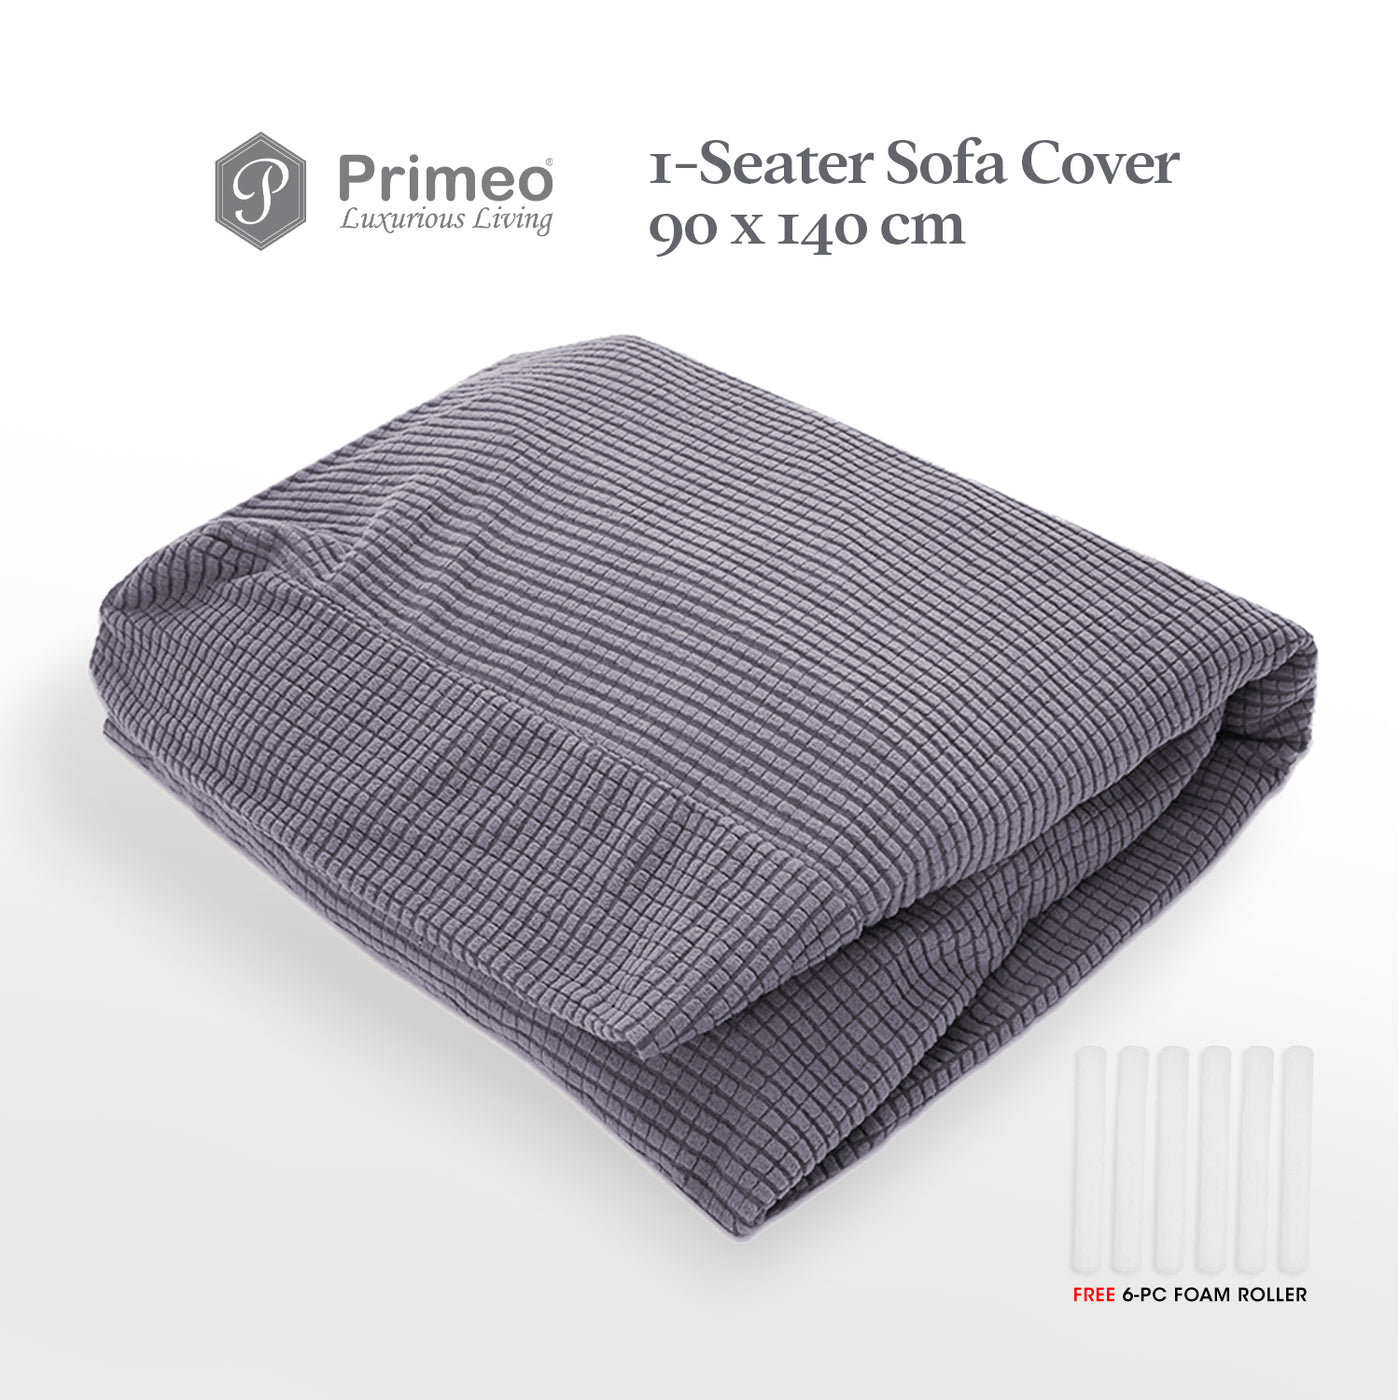 PRIMEO Sofa Cover 210 gsm Spandex